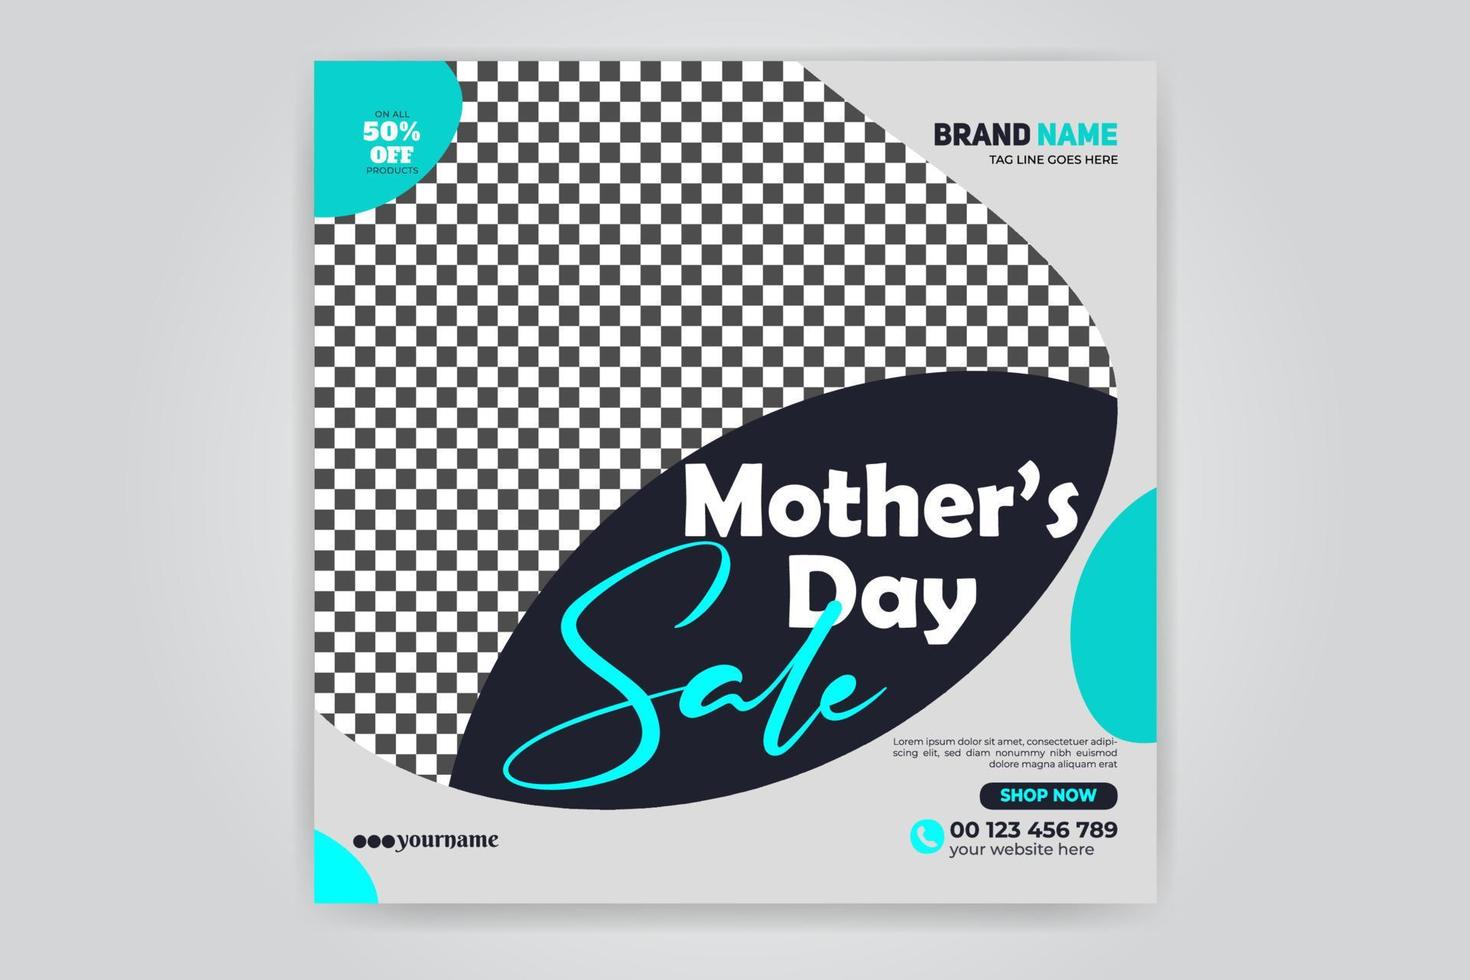 mors dag mode försäljning erbjudande rabatt banner sociala medier post designmall gratis nedladdning vektor